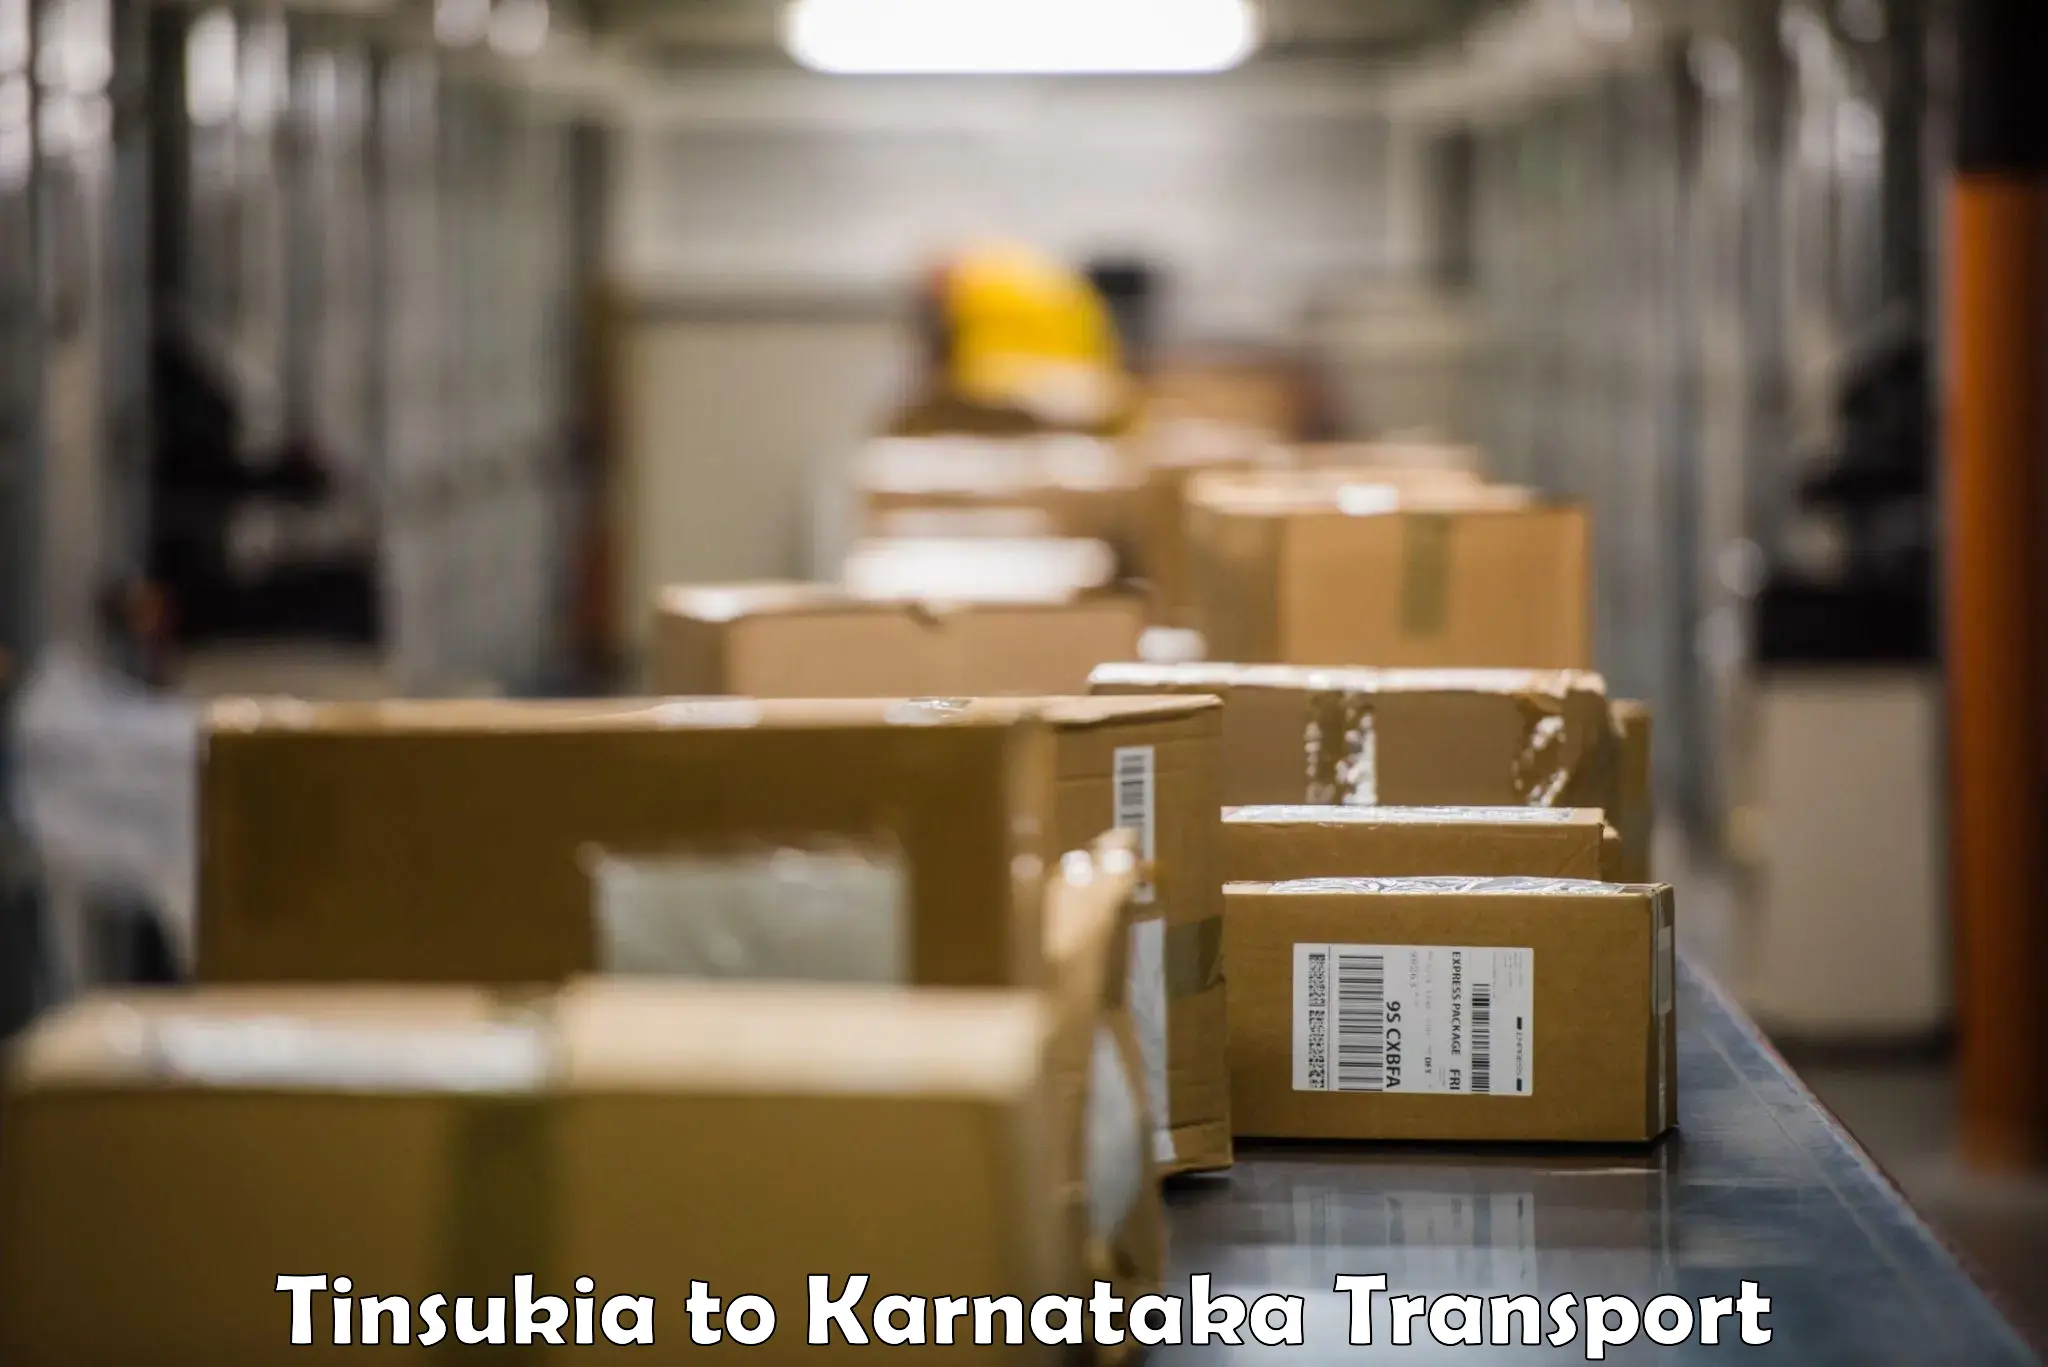 Bike shipping service Tinsukia to Kanjarakatte